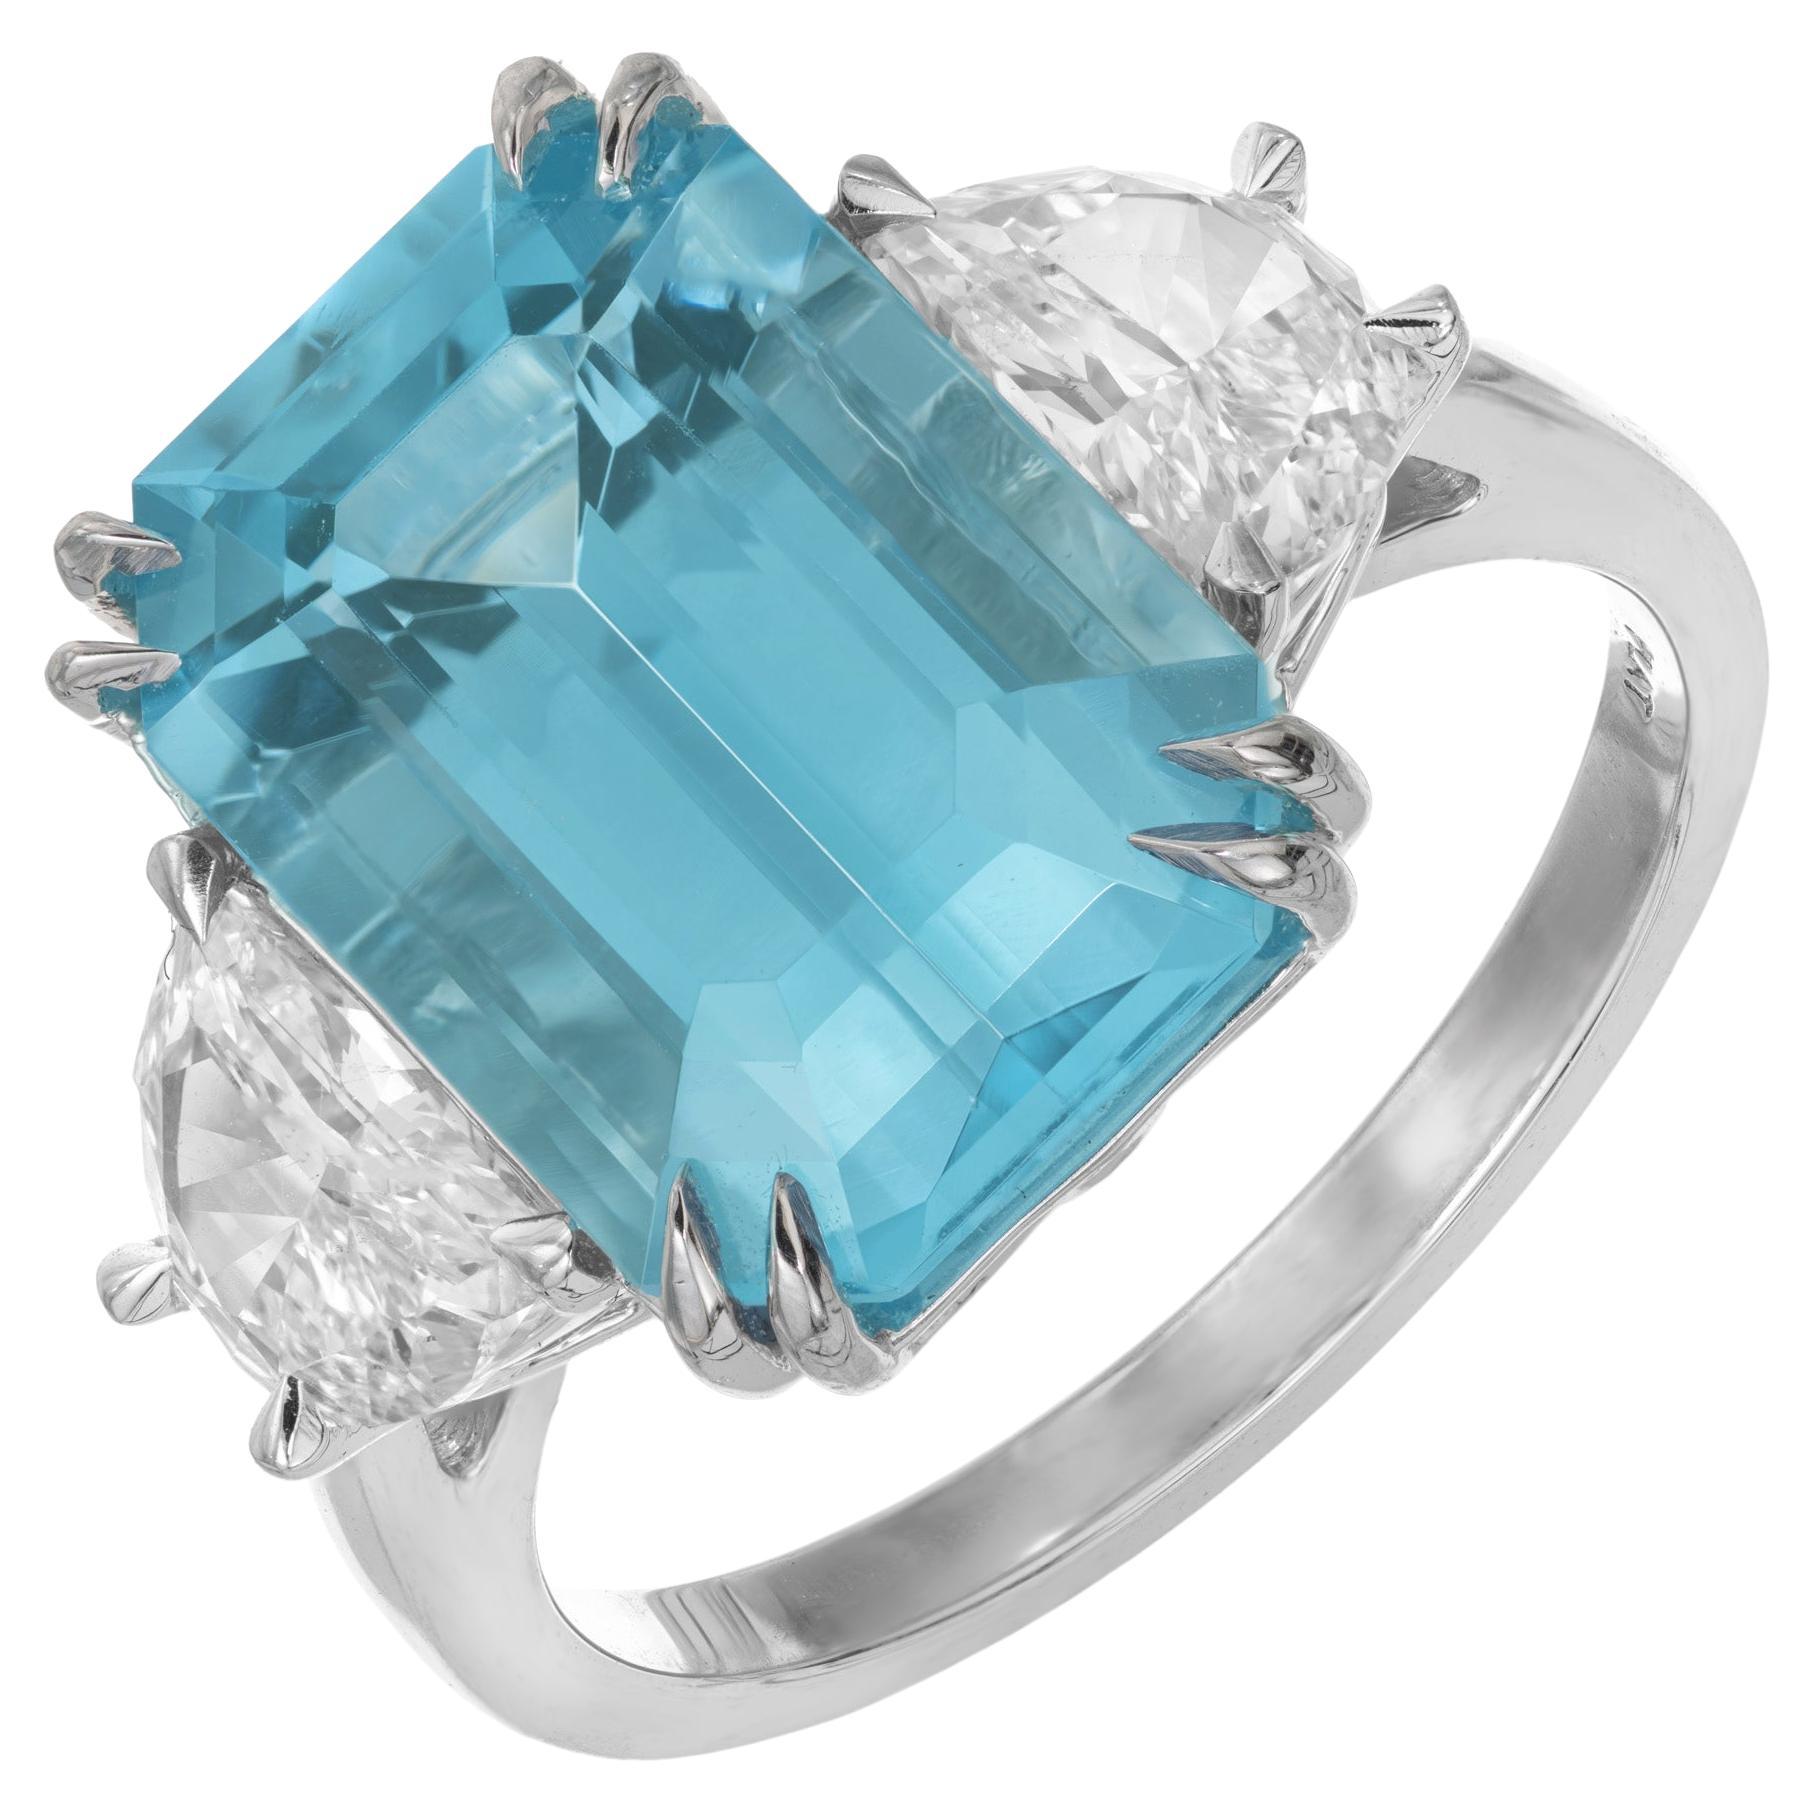  Peter Suchy 7.44 Carat Aqua Diamond Platinum Three-Stone Engagement Ring For Sale